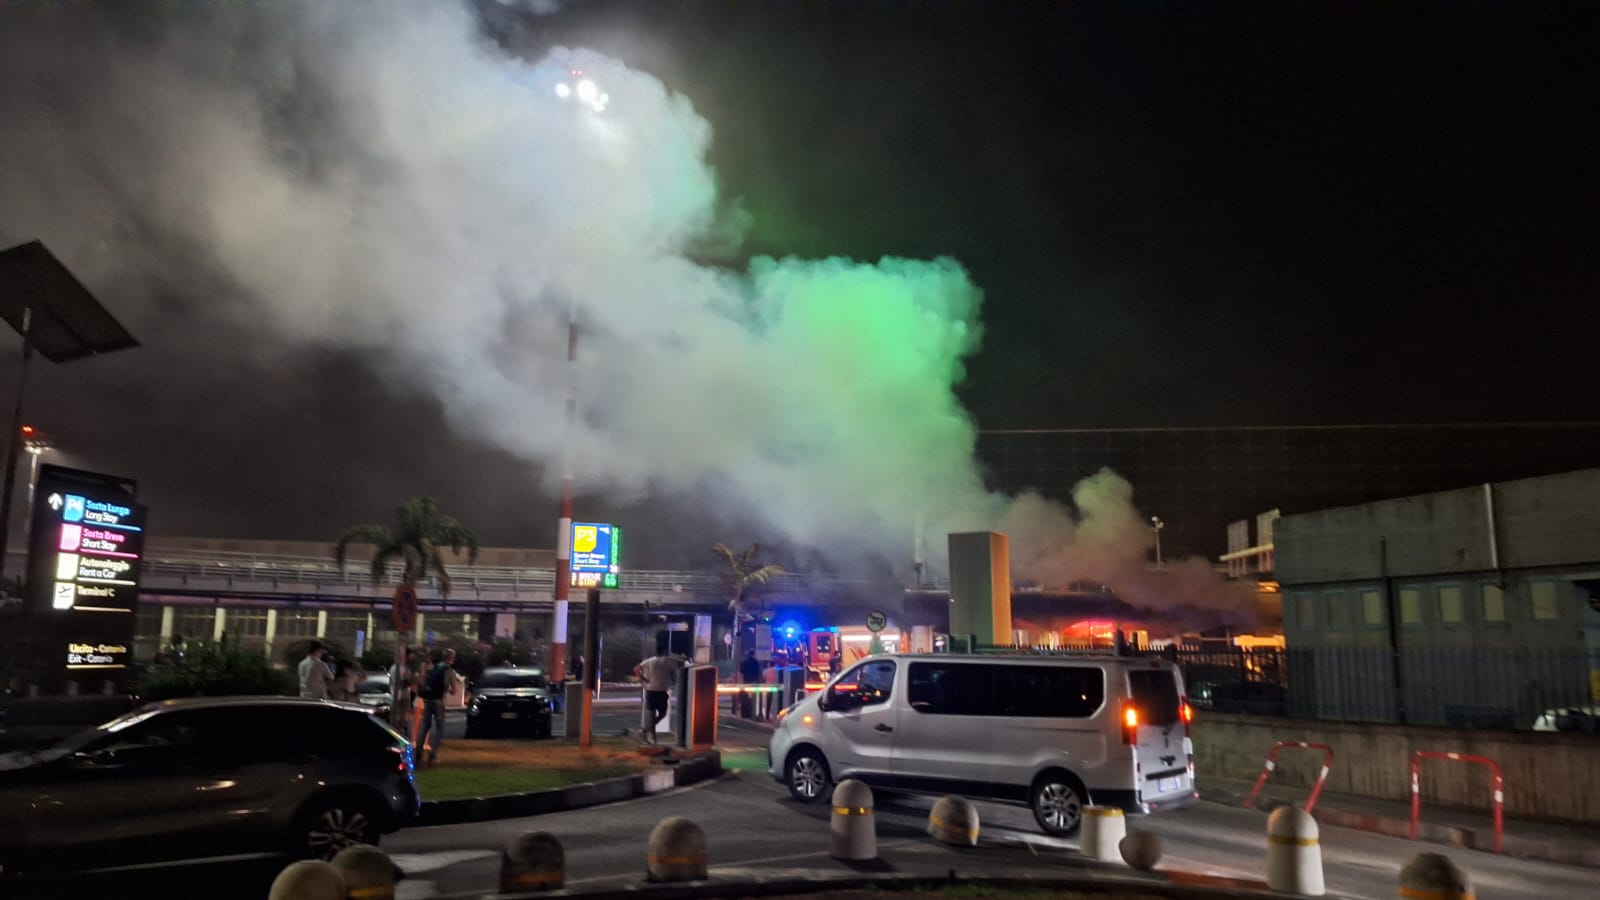 Incendio all’aeroporto di Catania, il racconto di un testimone: “Tutti scappavano, spingevano e piangevano”